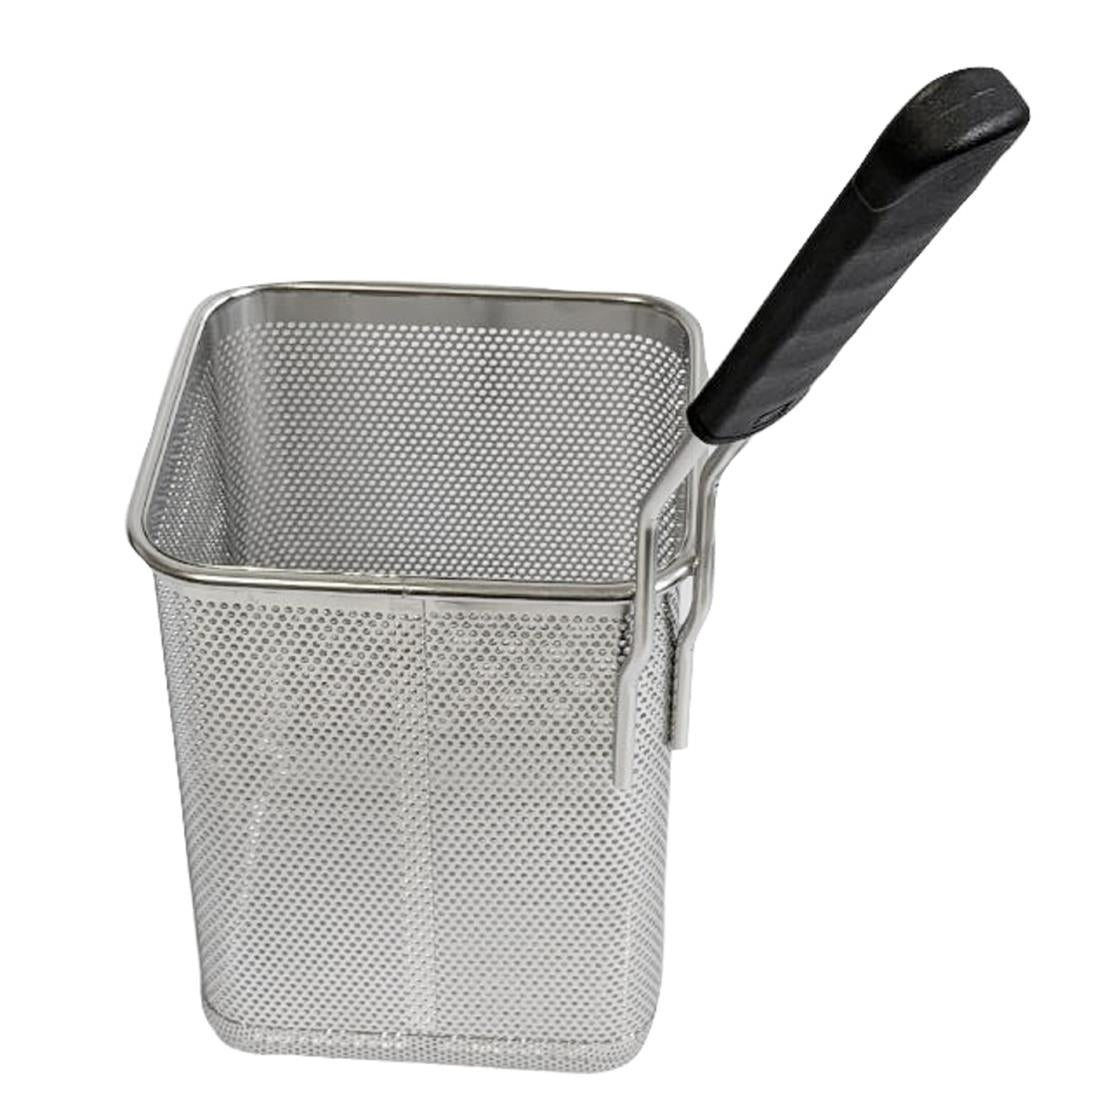 AP922 Giorik 1/6 GN Basket for Pasta Boiler - Right Handle